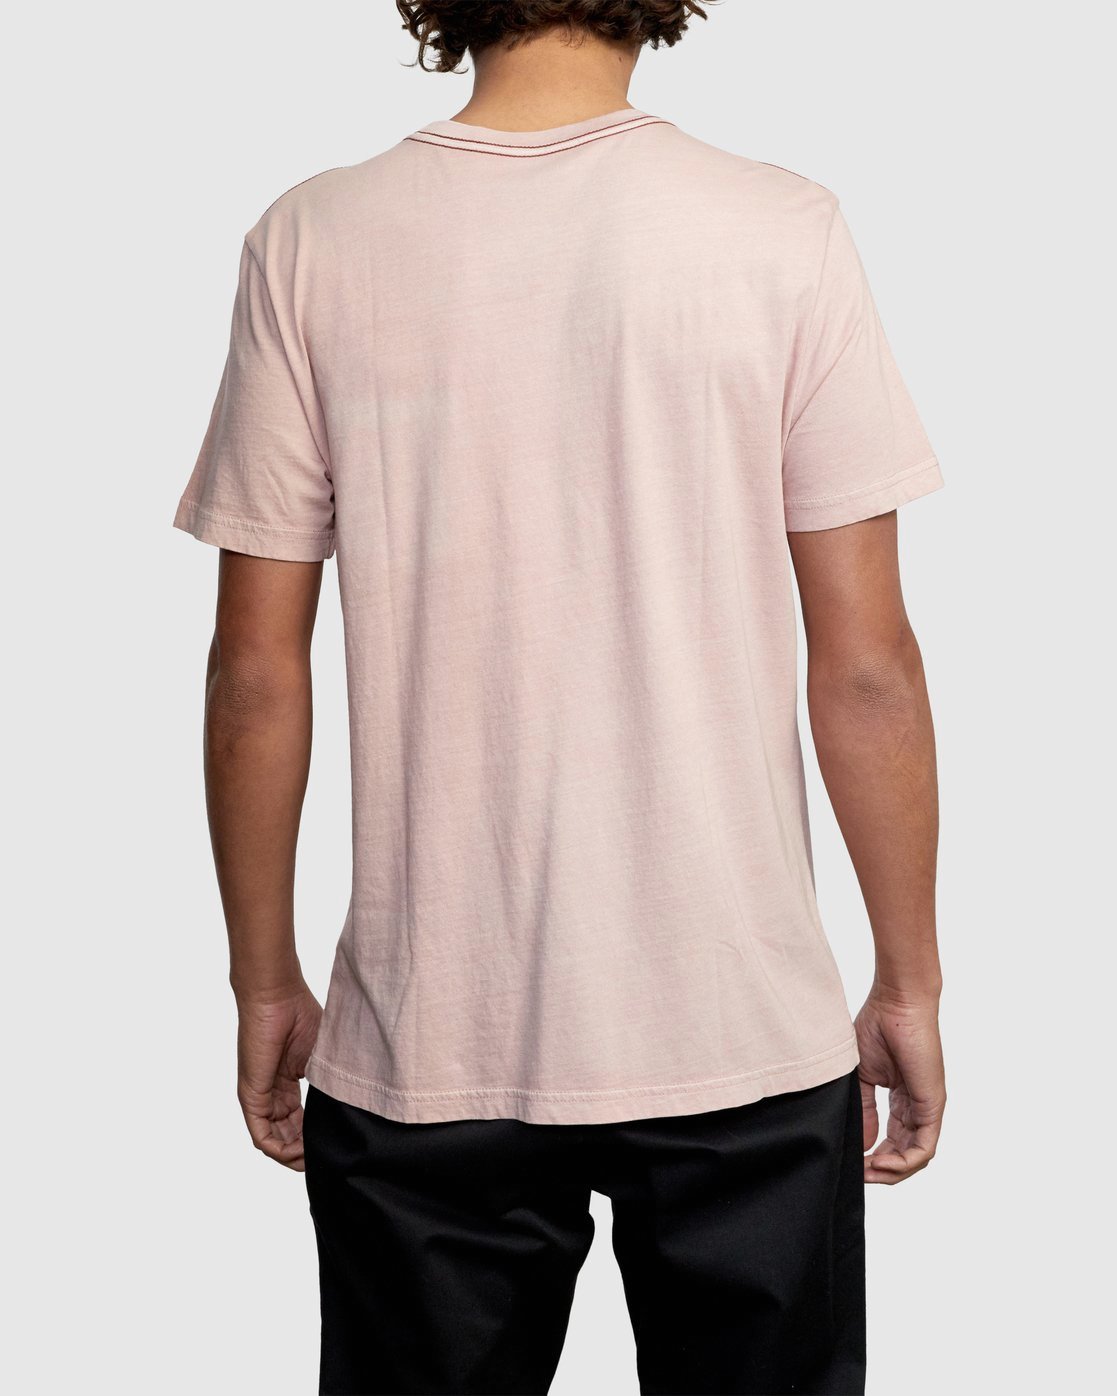 
                  
                    Camiseta PTC Pigment 2 - Pale Mauve
                  
                